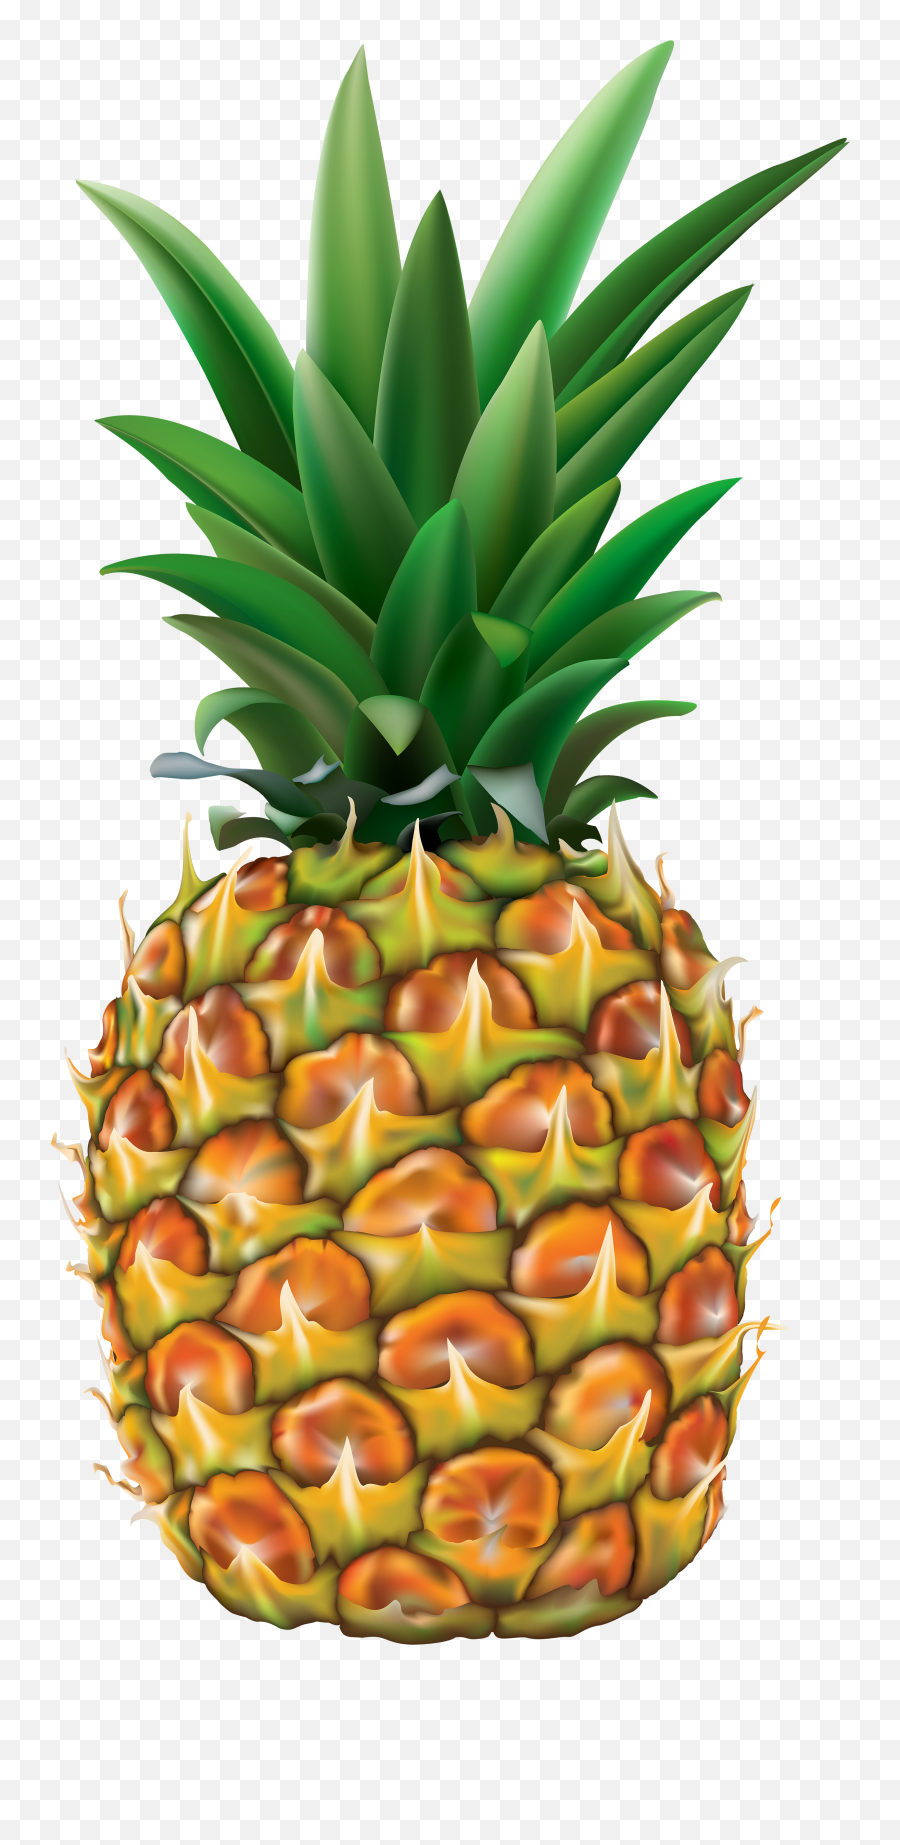 Pineapple Fruit Transparent Png Images Free Download - Free Pineapple Clipart Transparent Background Emoji,Pineapple Emoji